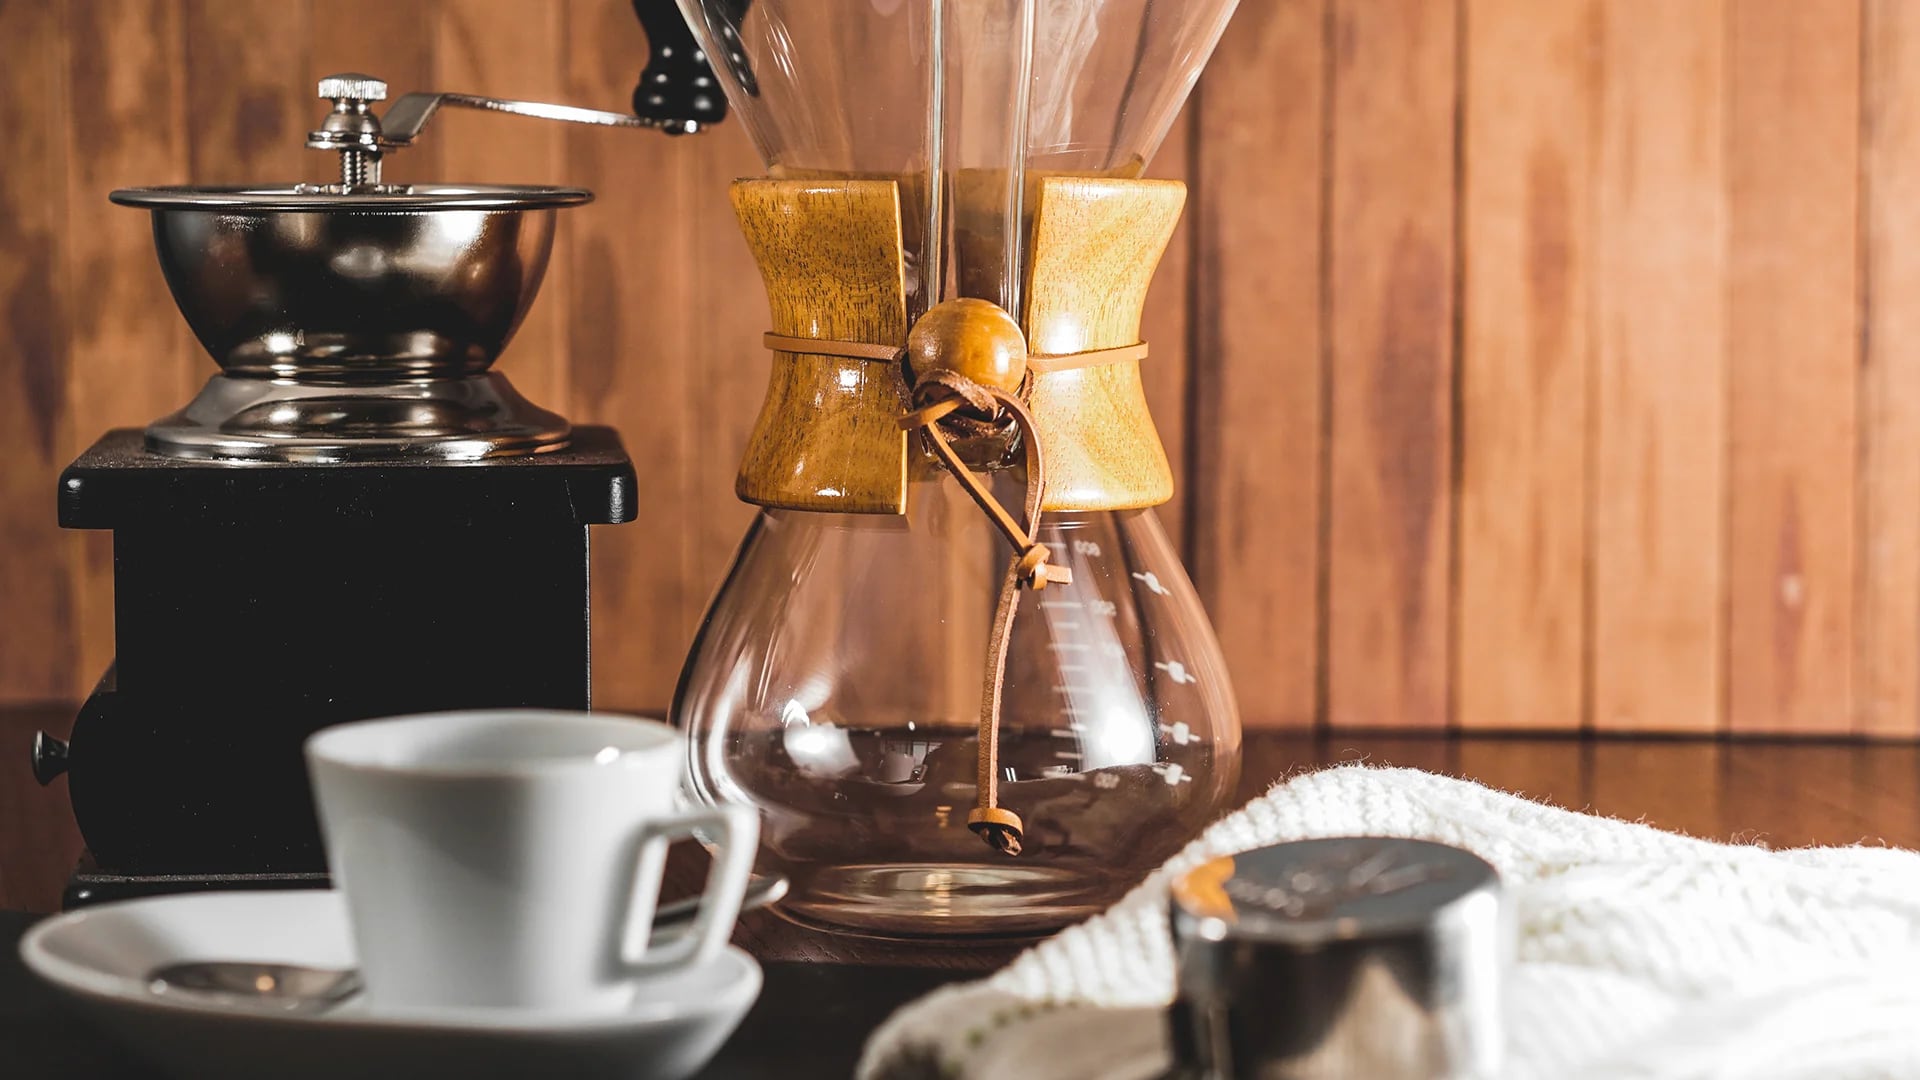 Conoces el café de especialidad? Los expertos nos cuentan las cinco claves  de su éxito